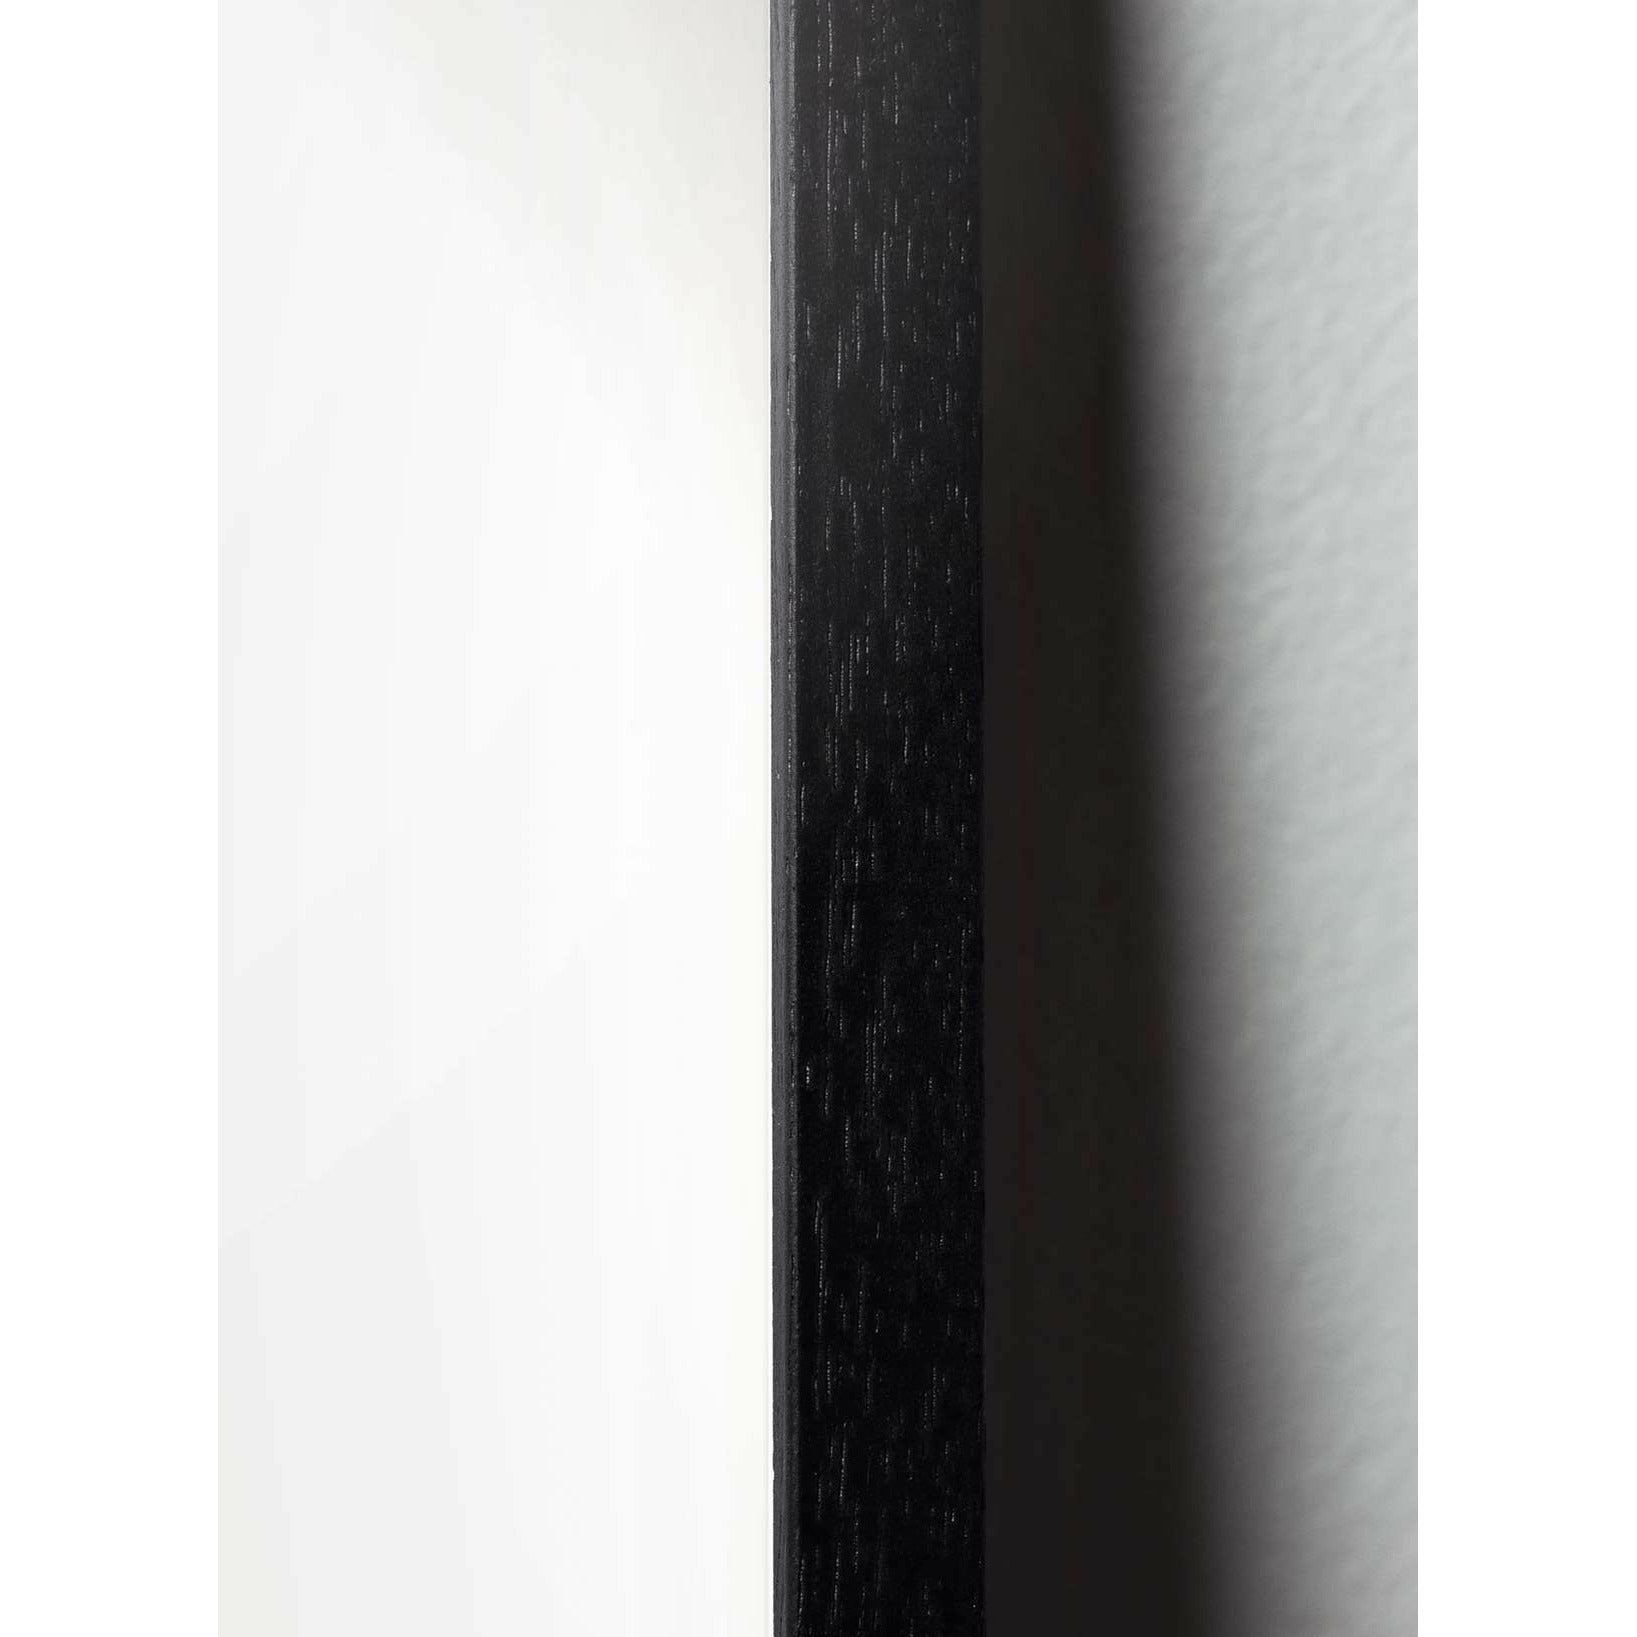 Plakat linii łańcuchowej, rama w czarnym lakierowanym drewnie 70x100 cm, niebieskie tło